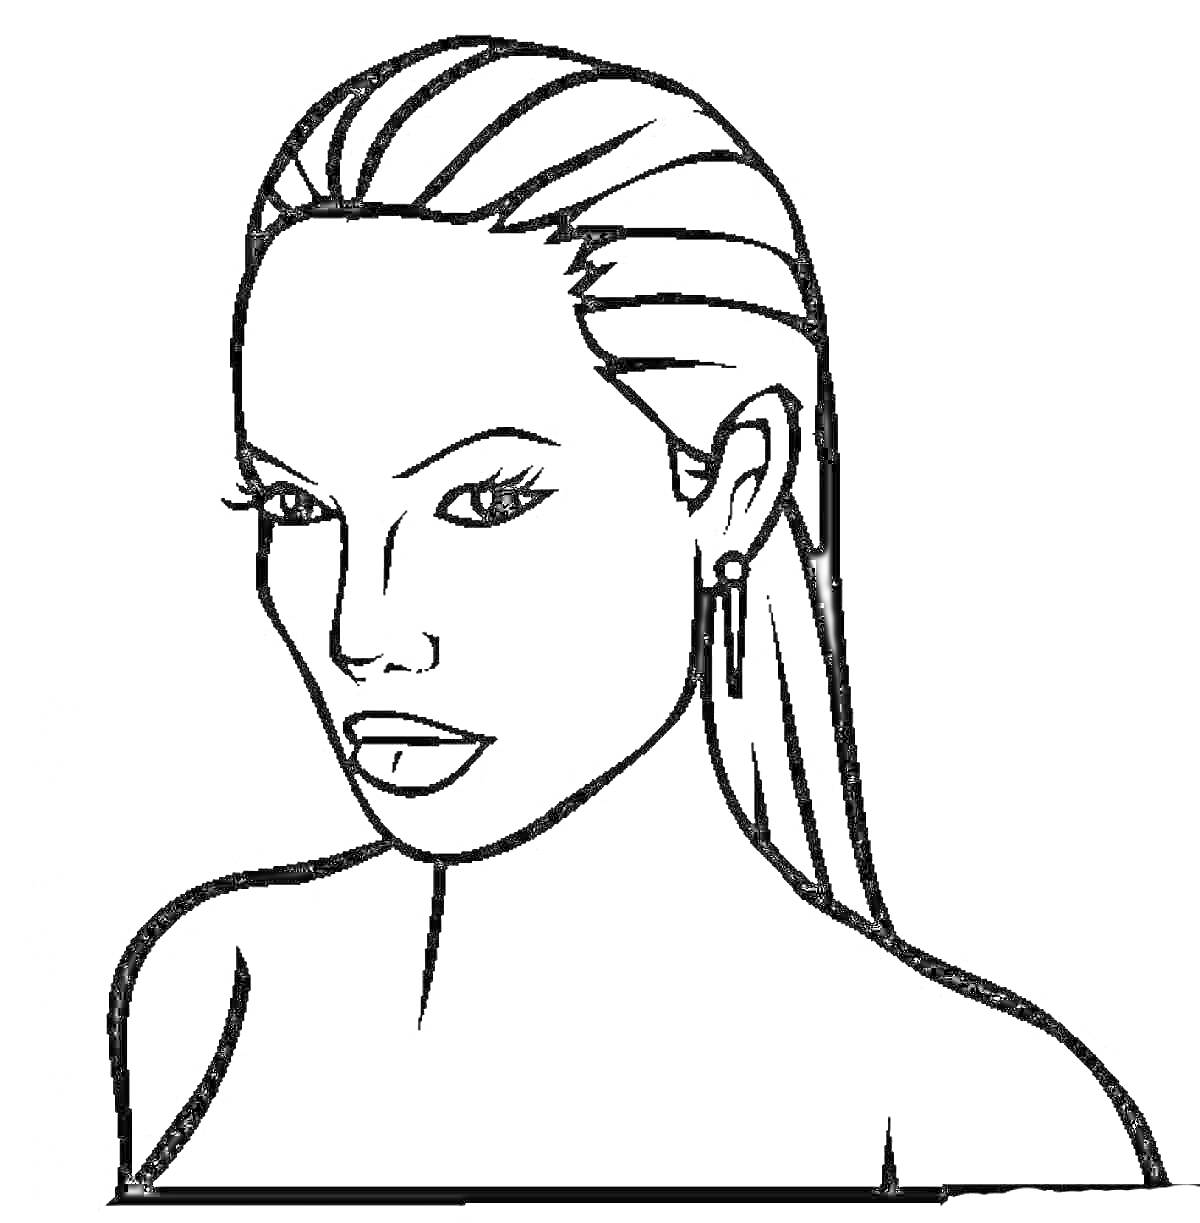 Раскраска лицо девушки с длинными волосами, серьгами, и левой рукой, касающейся шеи